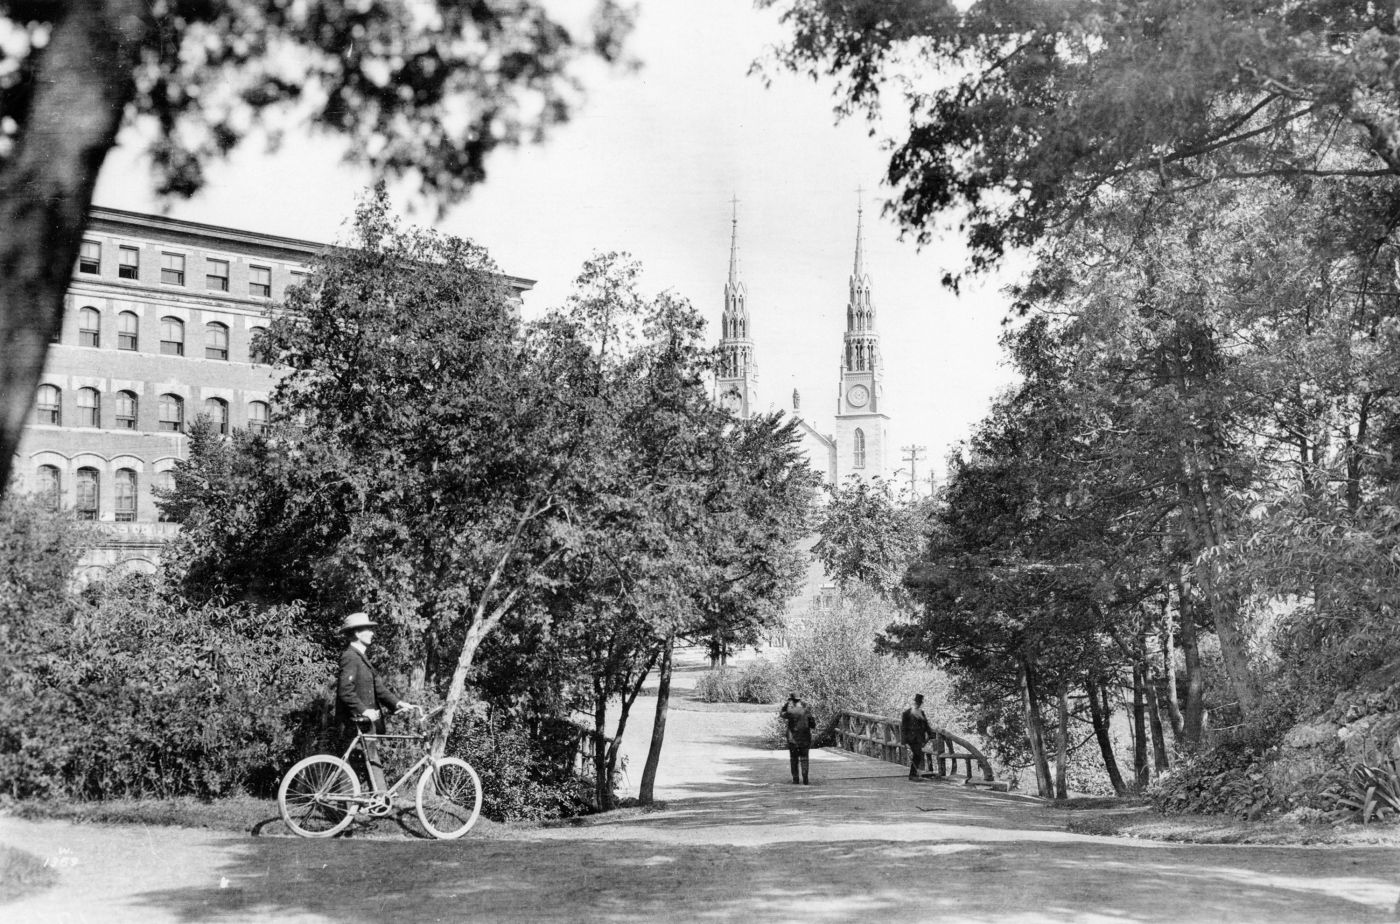 Photographie en noir et blanc d’un homme marchant à côté de sa bicyclette. Il se dirige vers une esplanade bordée d’arbres, menant à un pont de bois que traversent deux hommes à pied. Les deux clochers d’une grande église sont visibles entre les arbres.